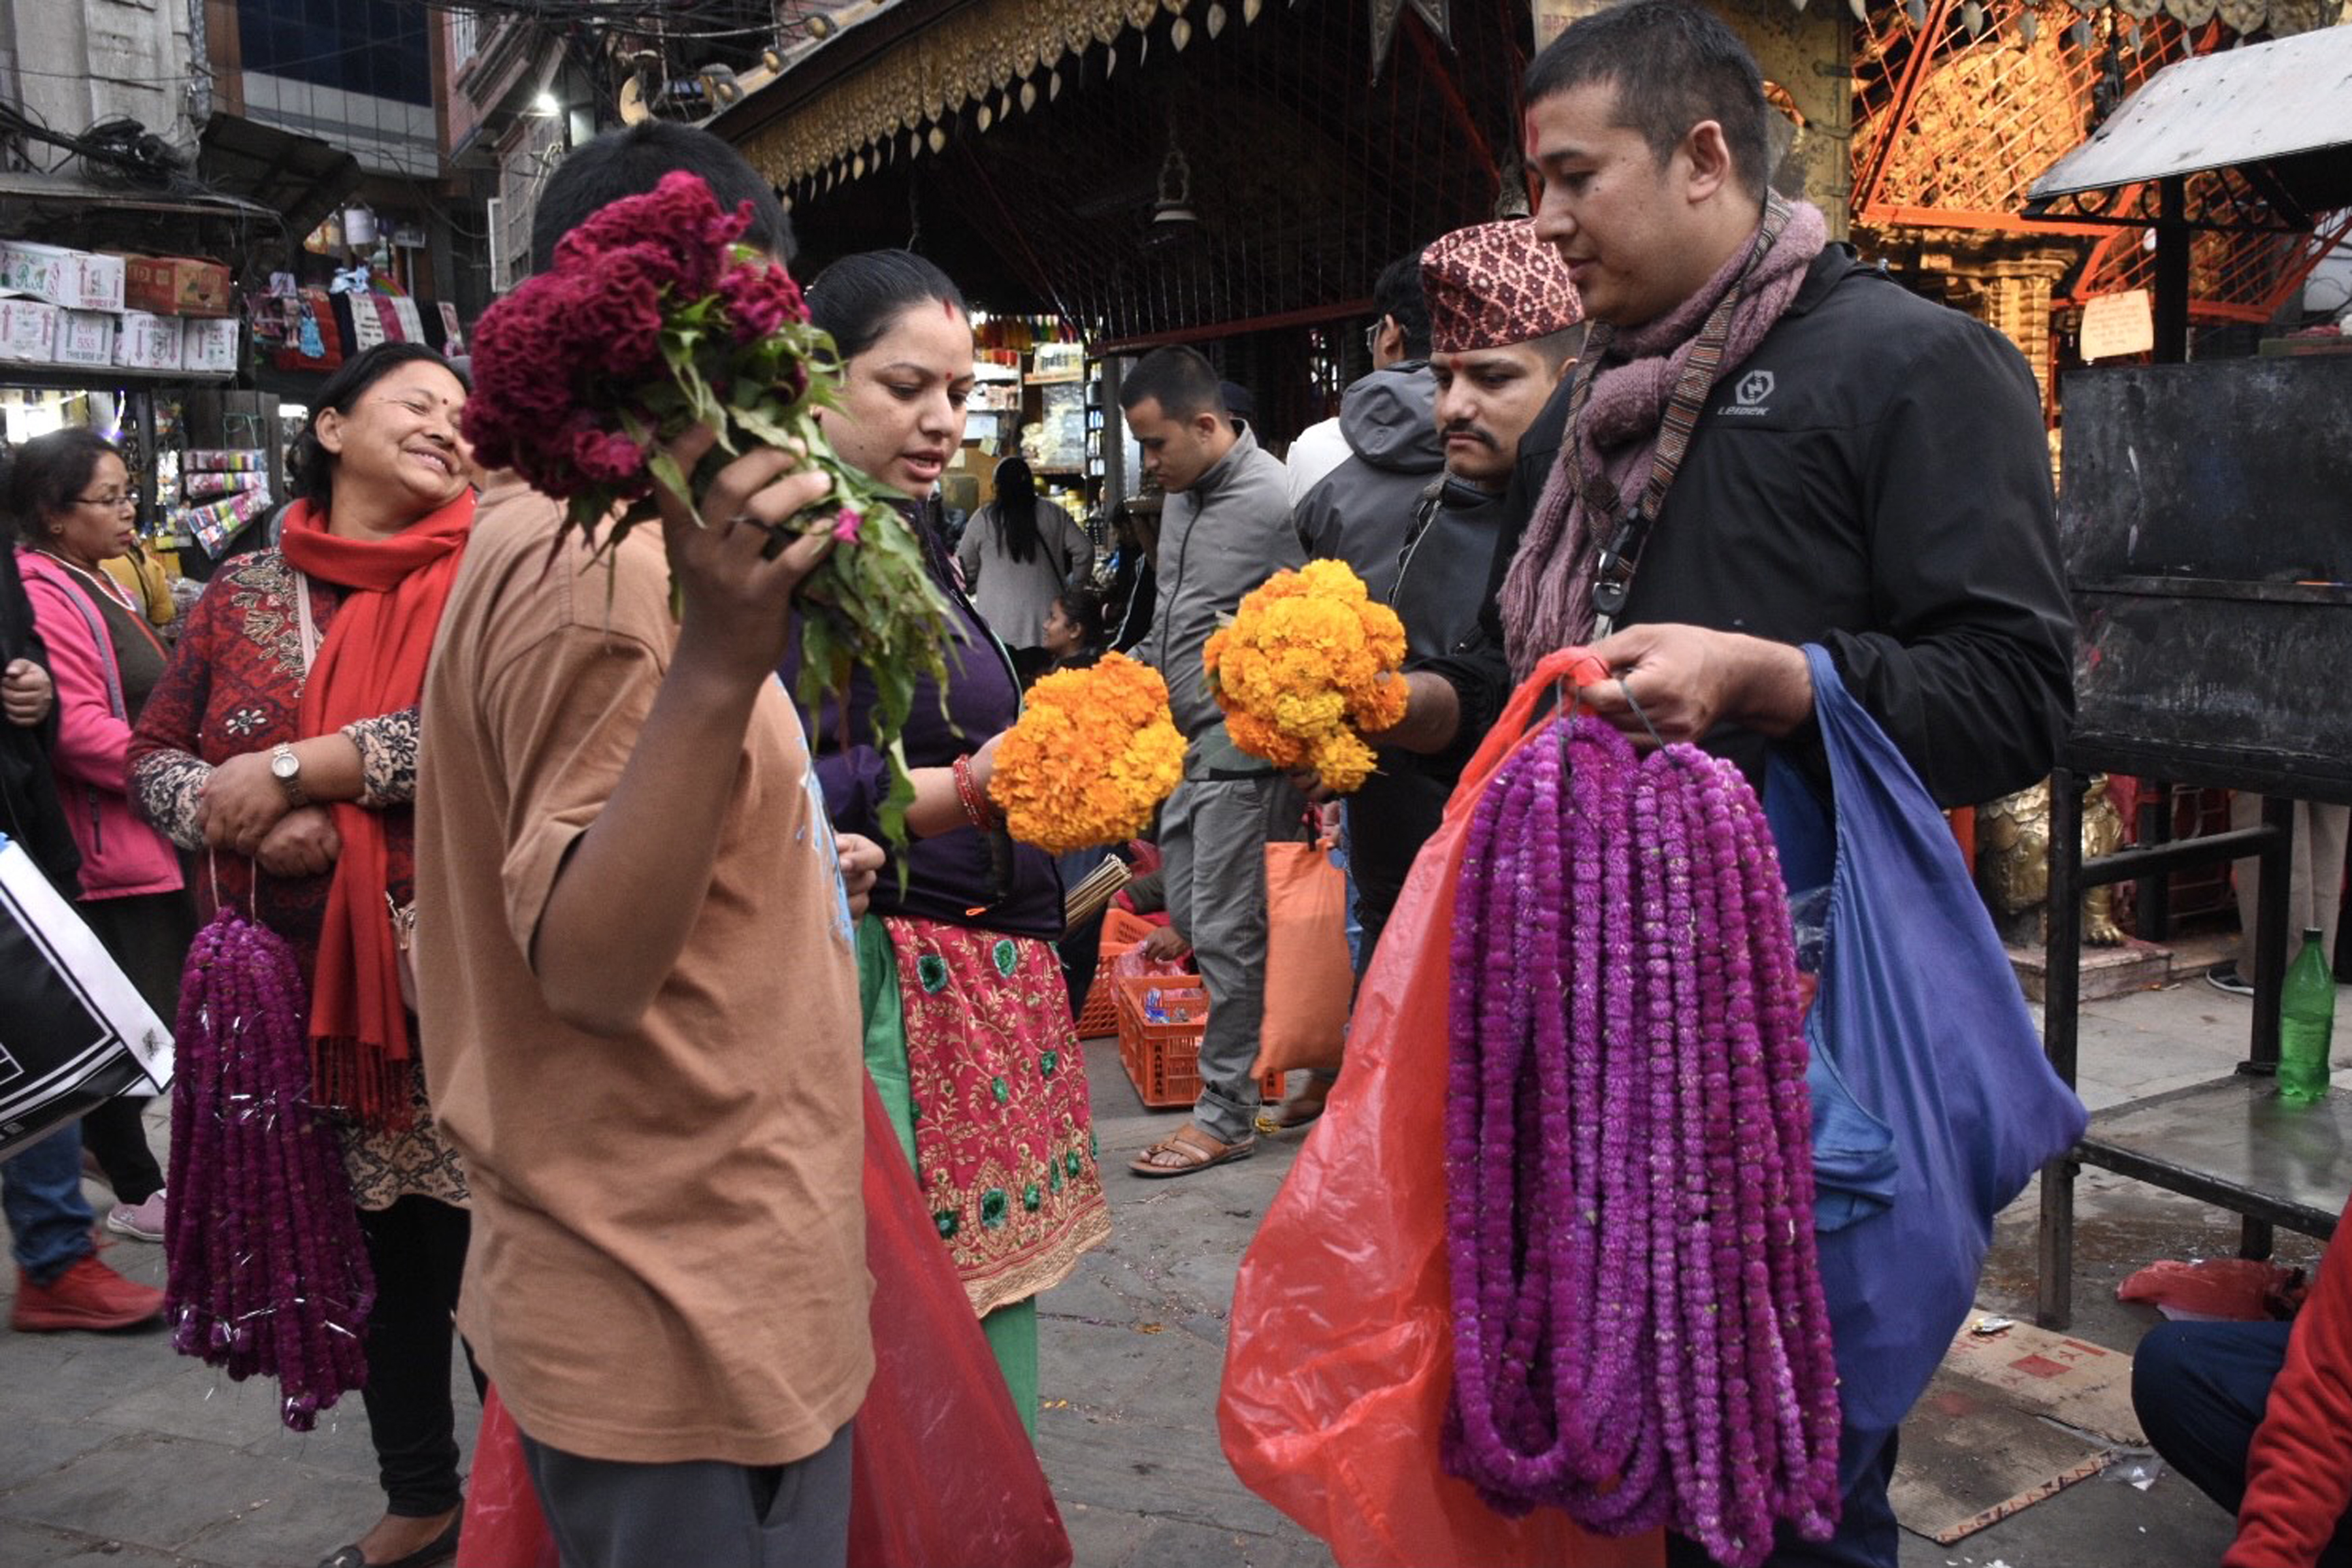 KMC's floral vendor management sets a positive trend